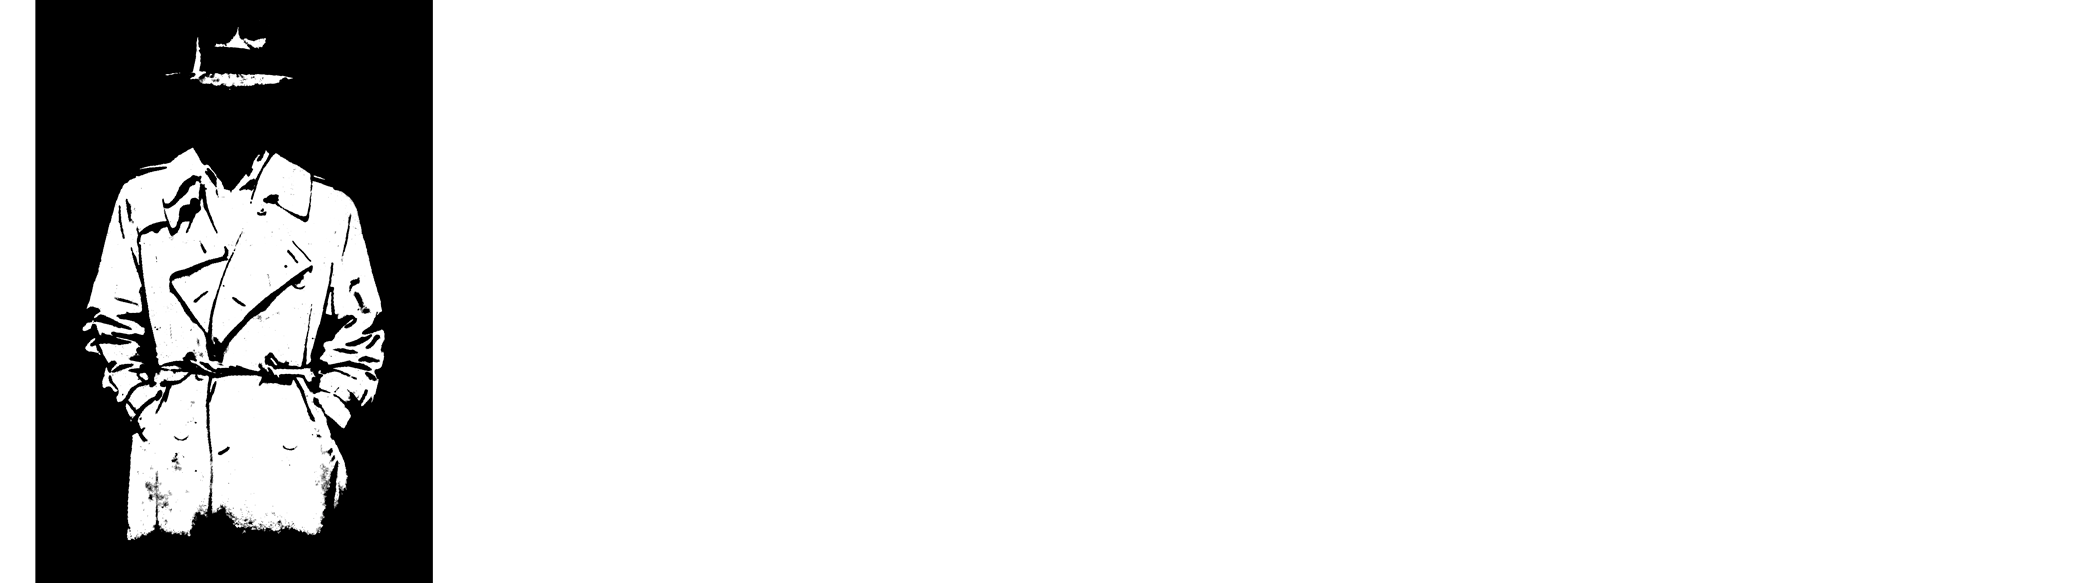 Mystfest